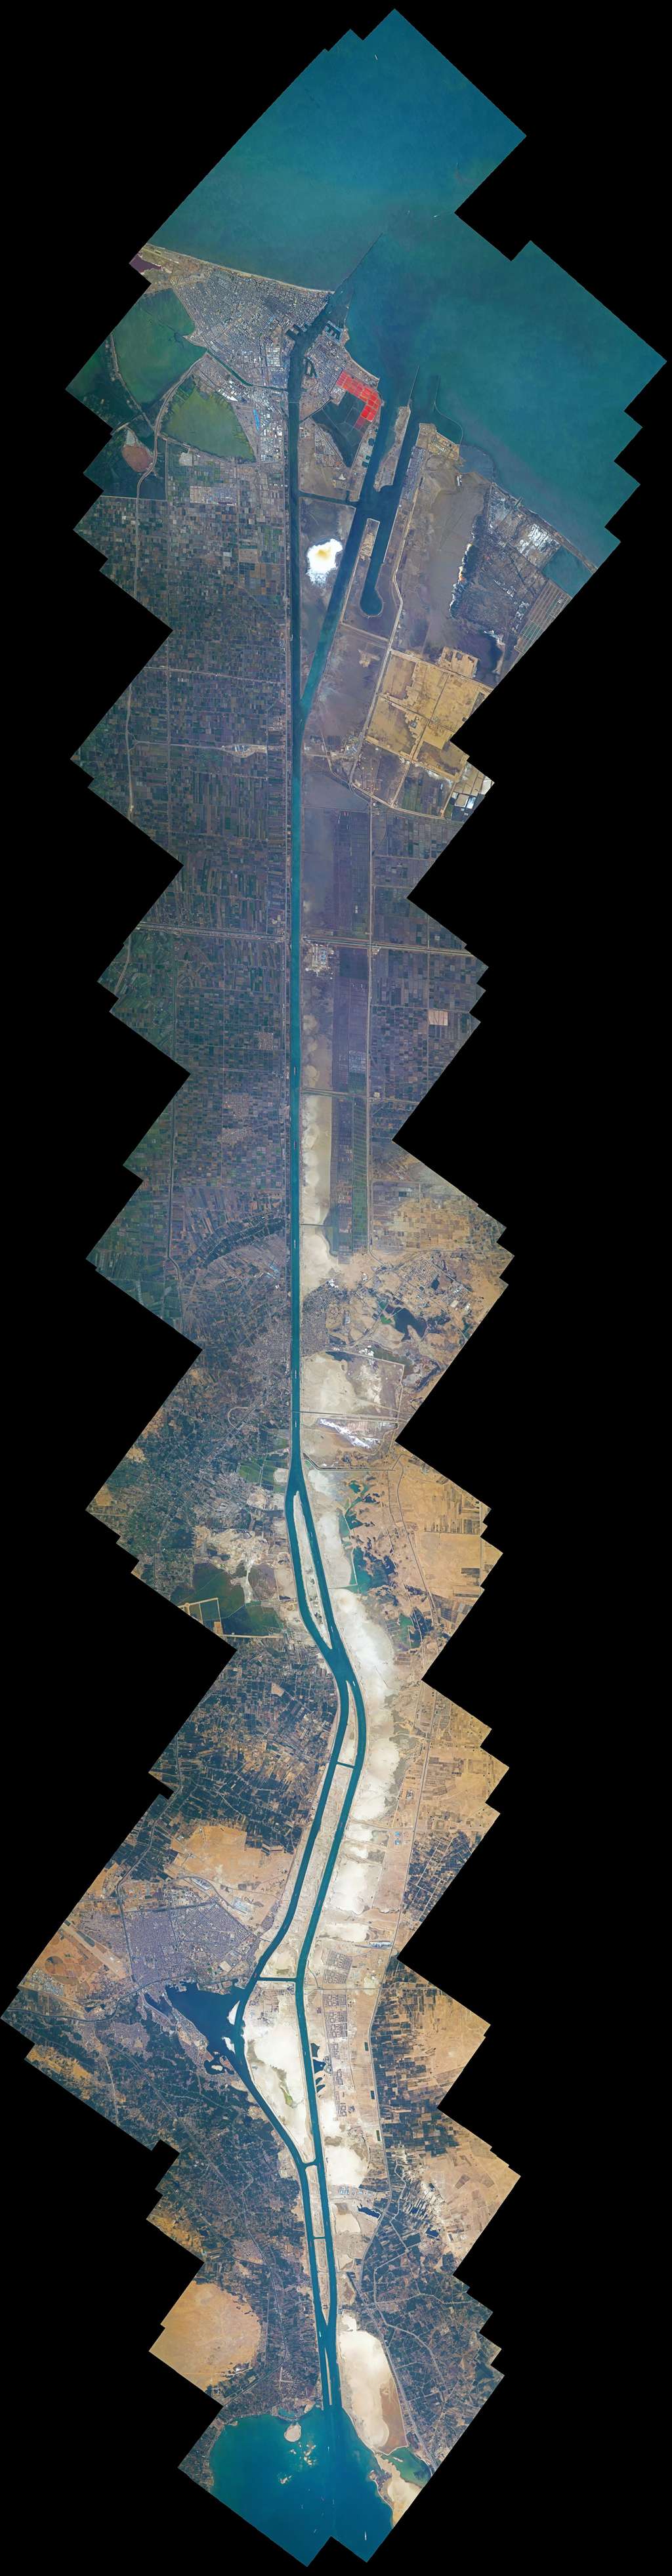  Ce grand collage montre le canal de Suez. Il est composé de 100 images cartographiées ensemble. © ESA/Nasa, Thomas Pesquet/A. Conigli